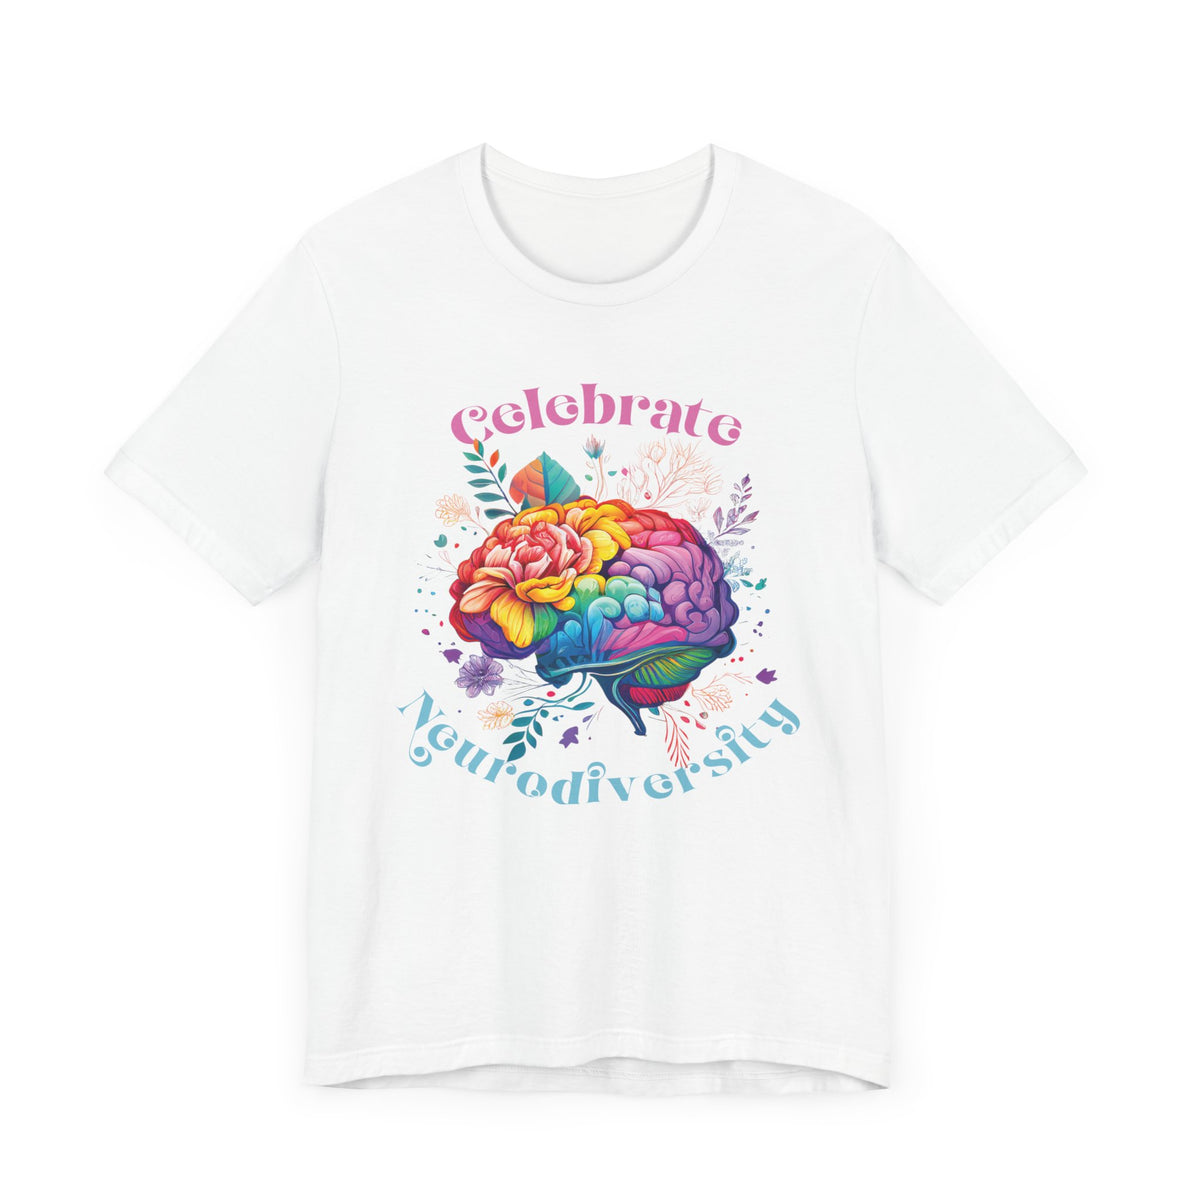 Celebrate Neurodiversity Shirt | Autism Shirt | Autism Awareness Shirt | Inclusion Shirt | Brain Art | Super Soft Unisex Jersey T-shirt